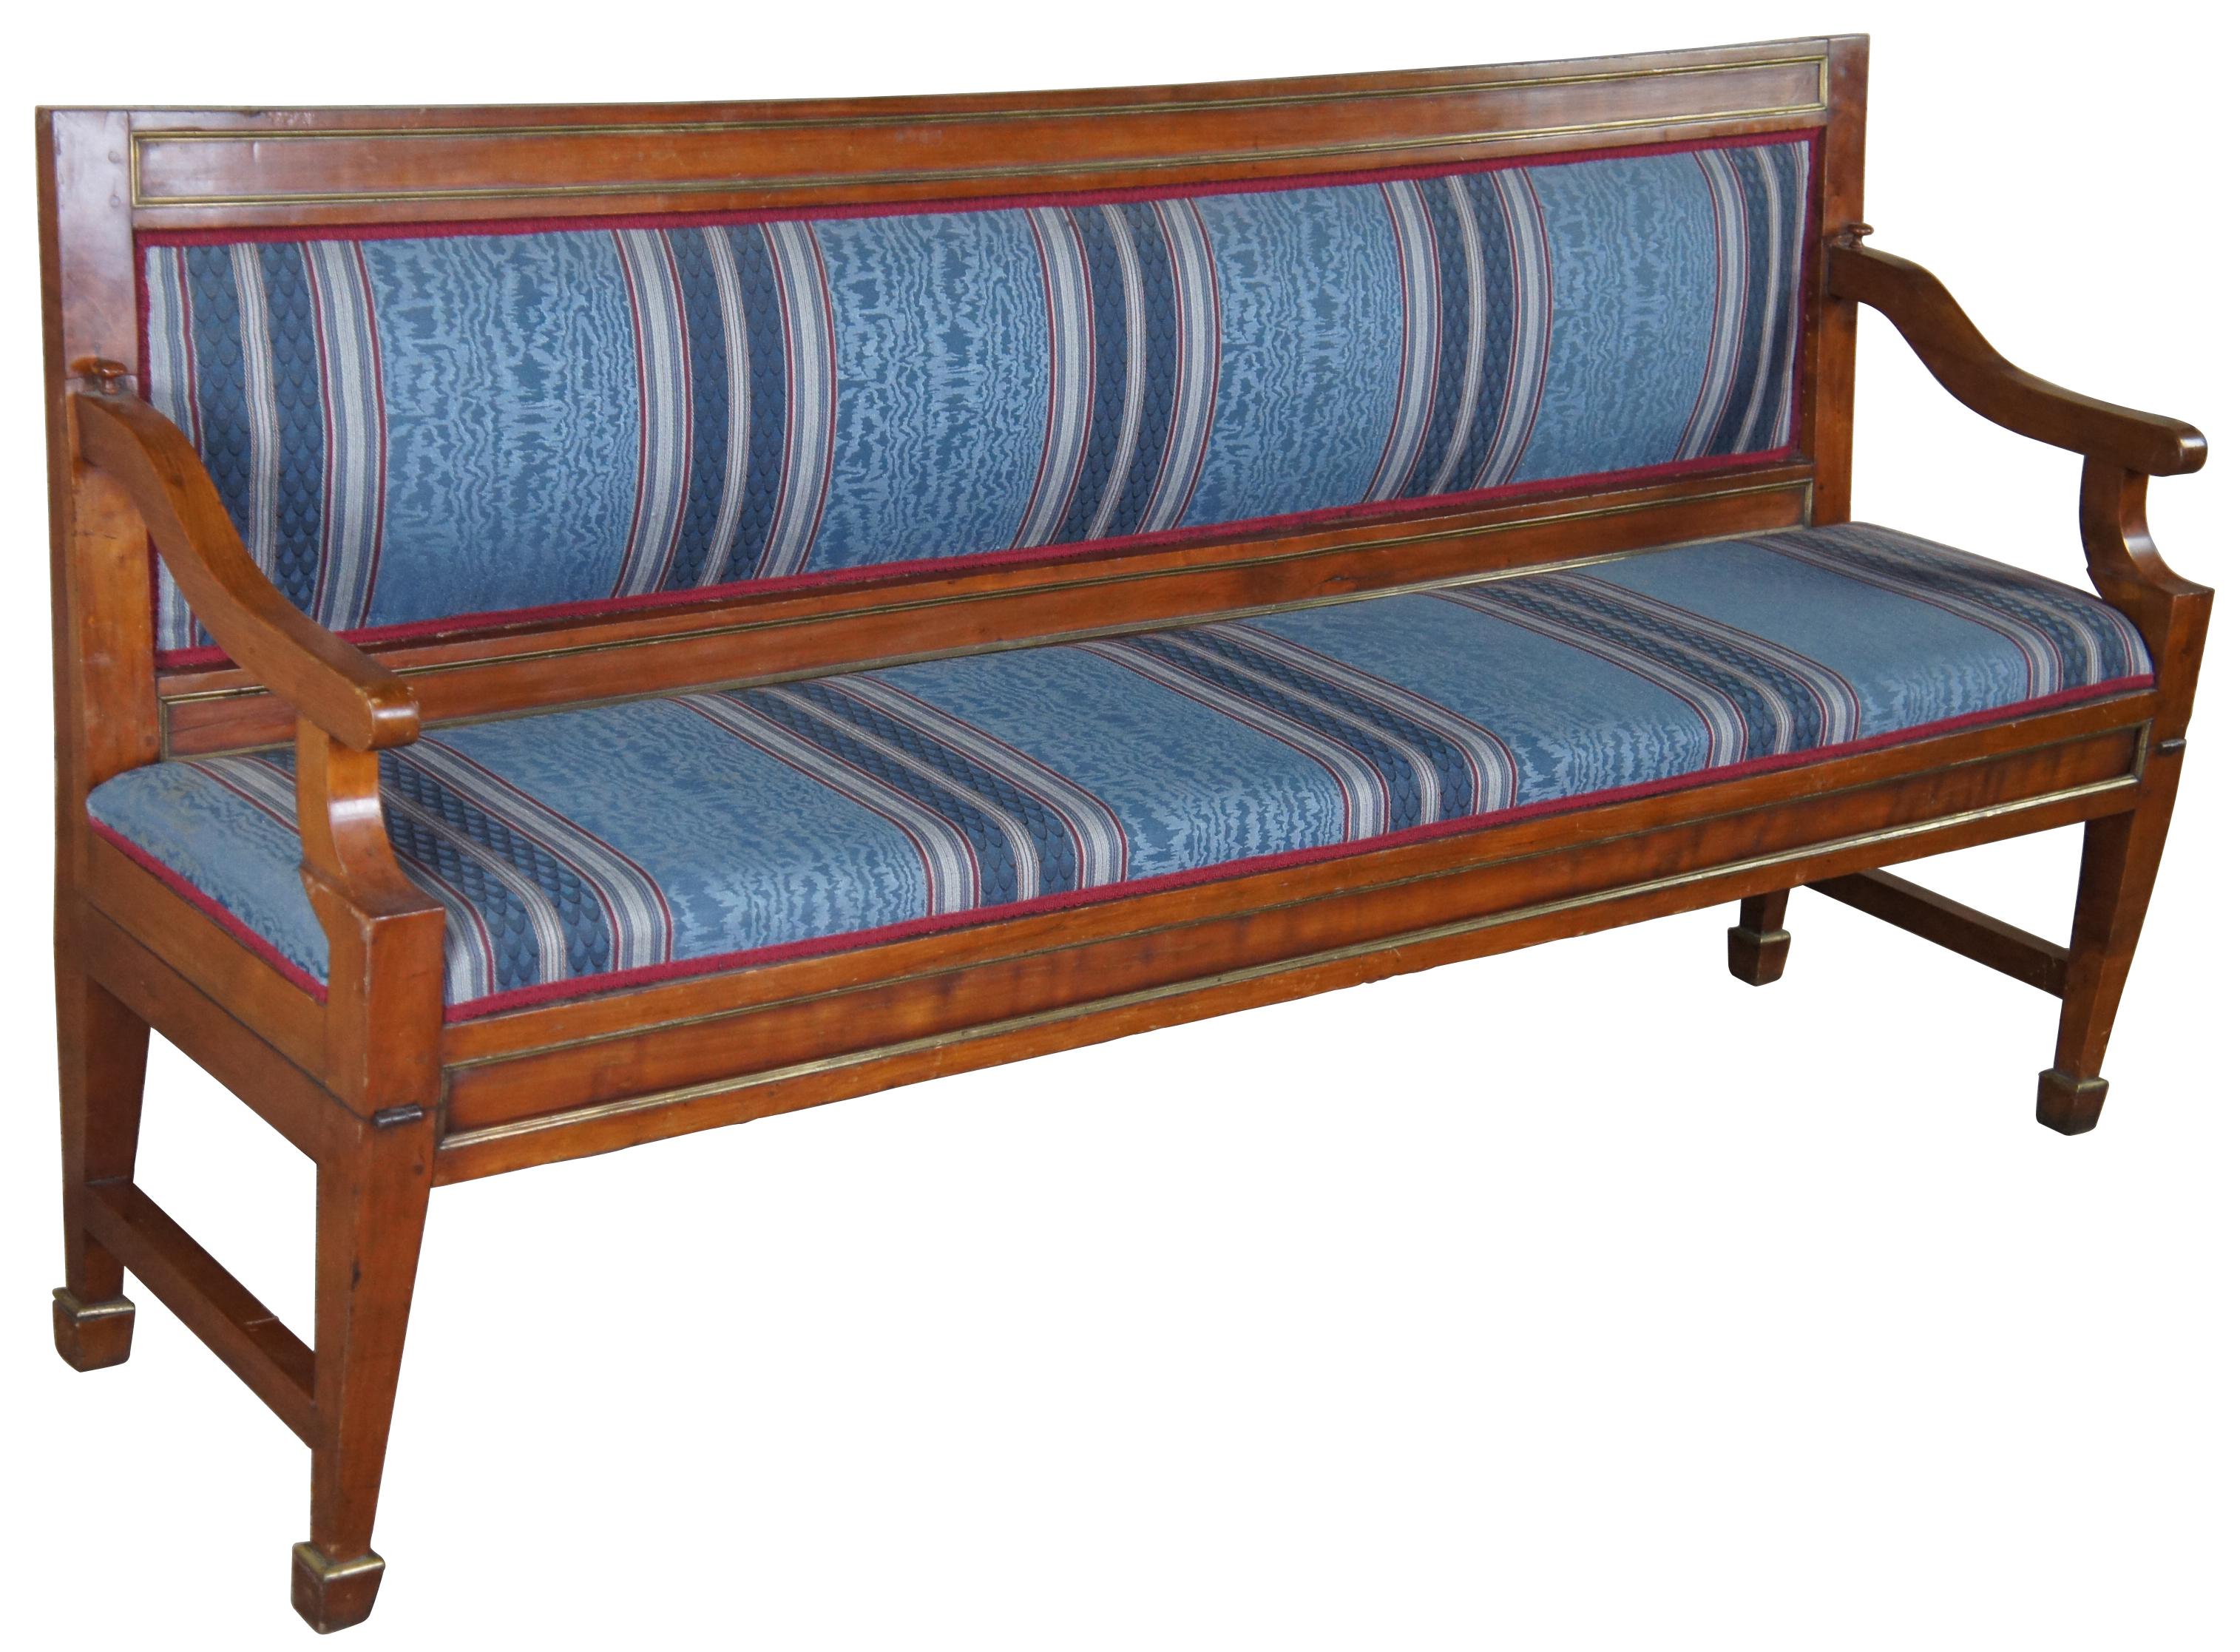 Frühe englische Regency-Sitzbank oder Bett in Museumsqualität aus dem 19. Eine rechteckige Form A aus Nussbaumholz mit Messingbeschlägen. Gepolstert mit einem blau-rot gestreiften Stoff mit roter Kordel. Die Bank wird von quadratischen, konischen